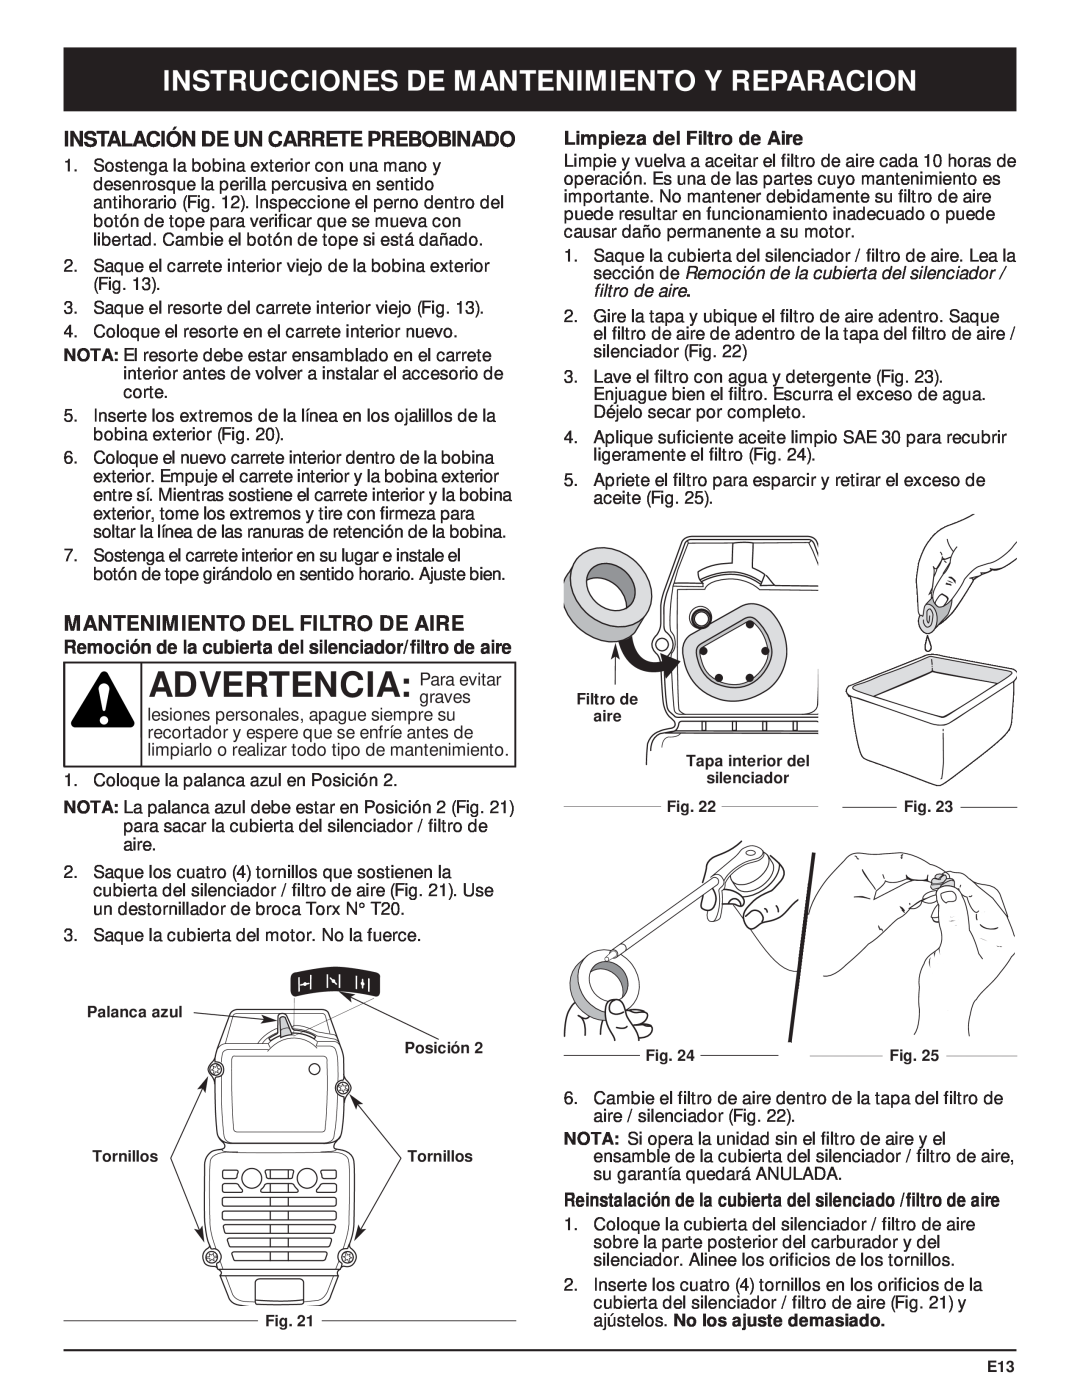 MTD Y28 manual Instalación De Un Carrete Prebobinado, Mantenimiento Del Filtro De Aire, Limpieza del Filtro de Aire 